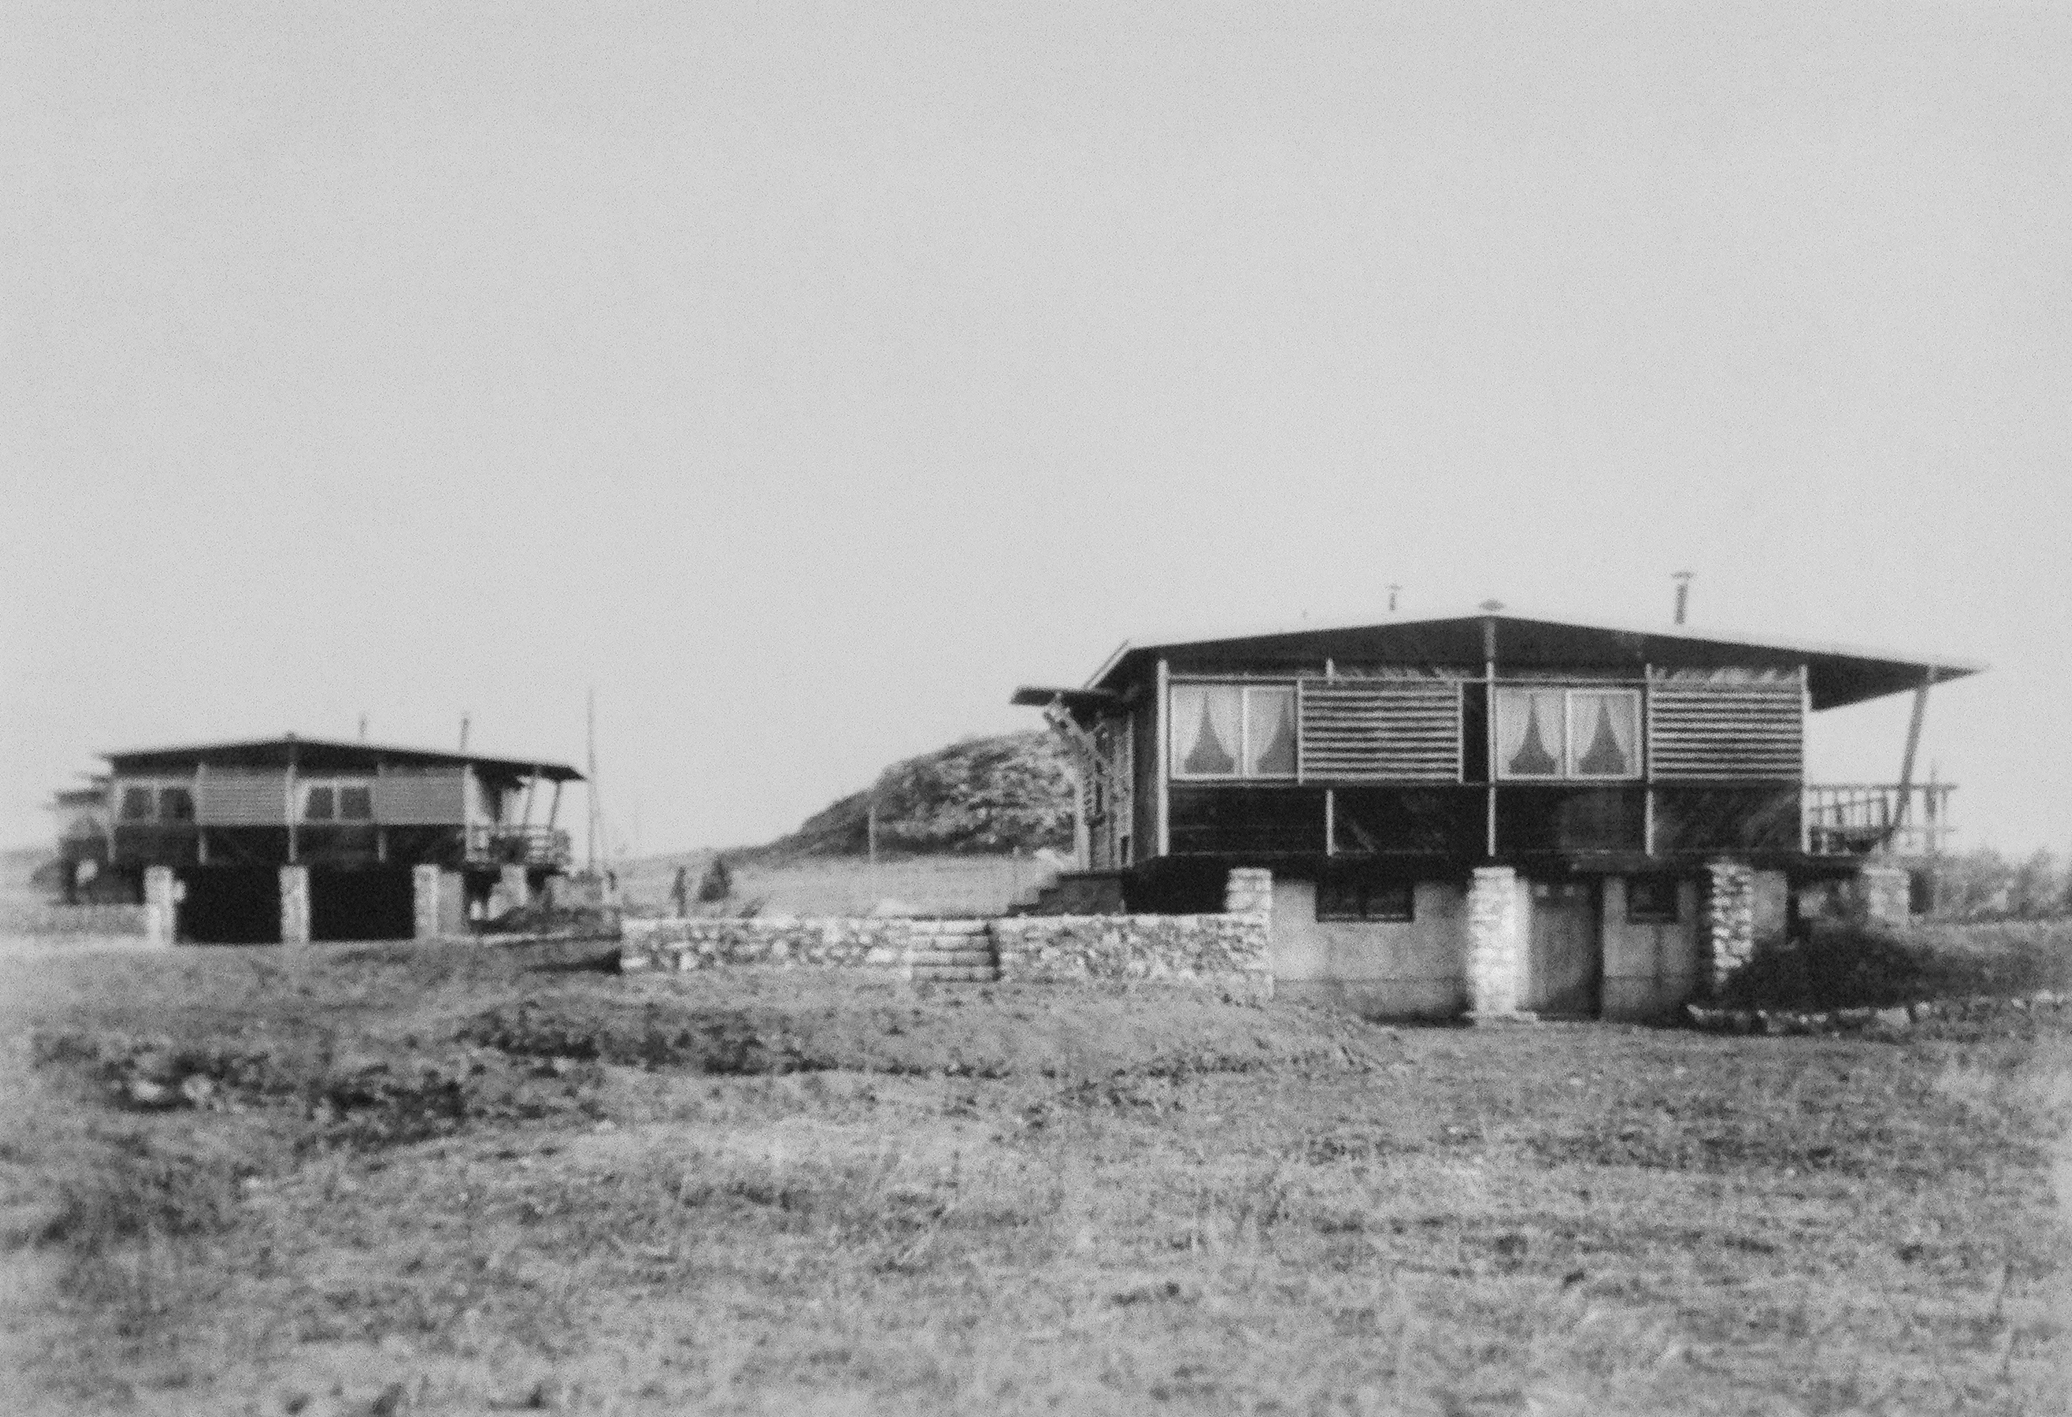 F 8x8 BCC Demountable houses, 1941. Constructional system Jean Prouvé, architect Pierre Jeanneret. “La Martine“ housing estate, Salindres, November 1944.